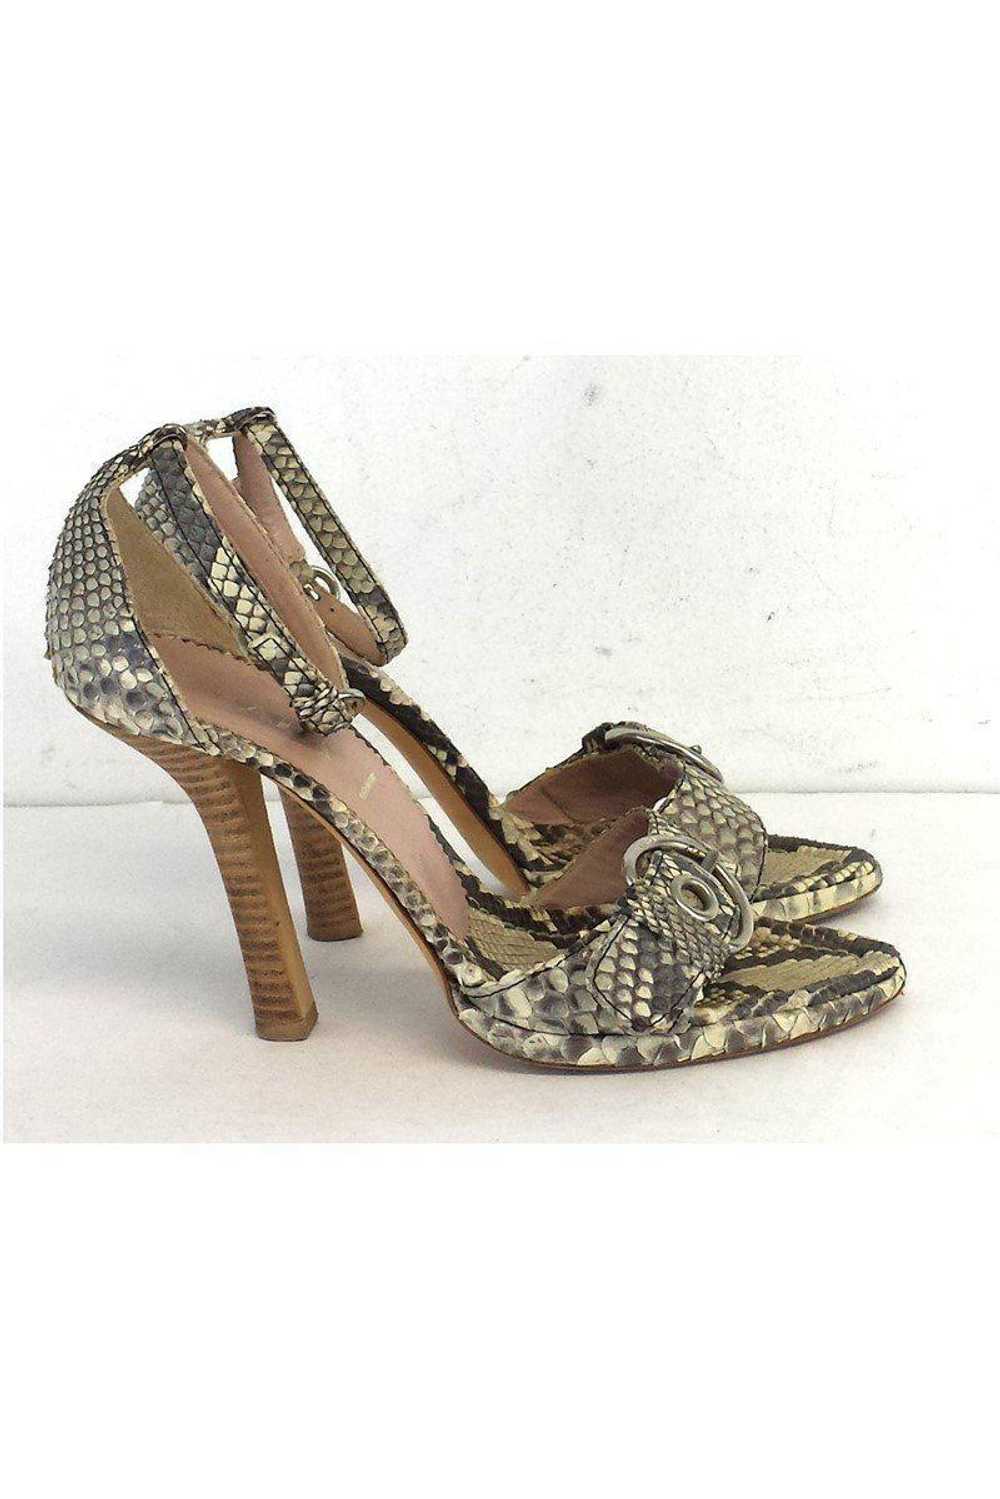 Prada - Beige & Grey Snakeskin Sandal Heels Sz 7 - image 3